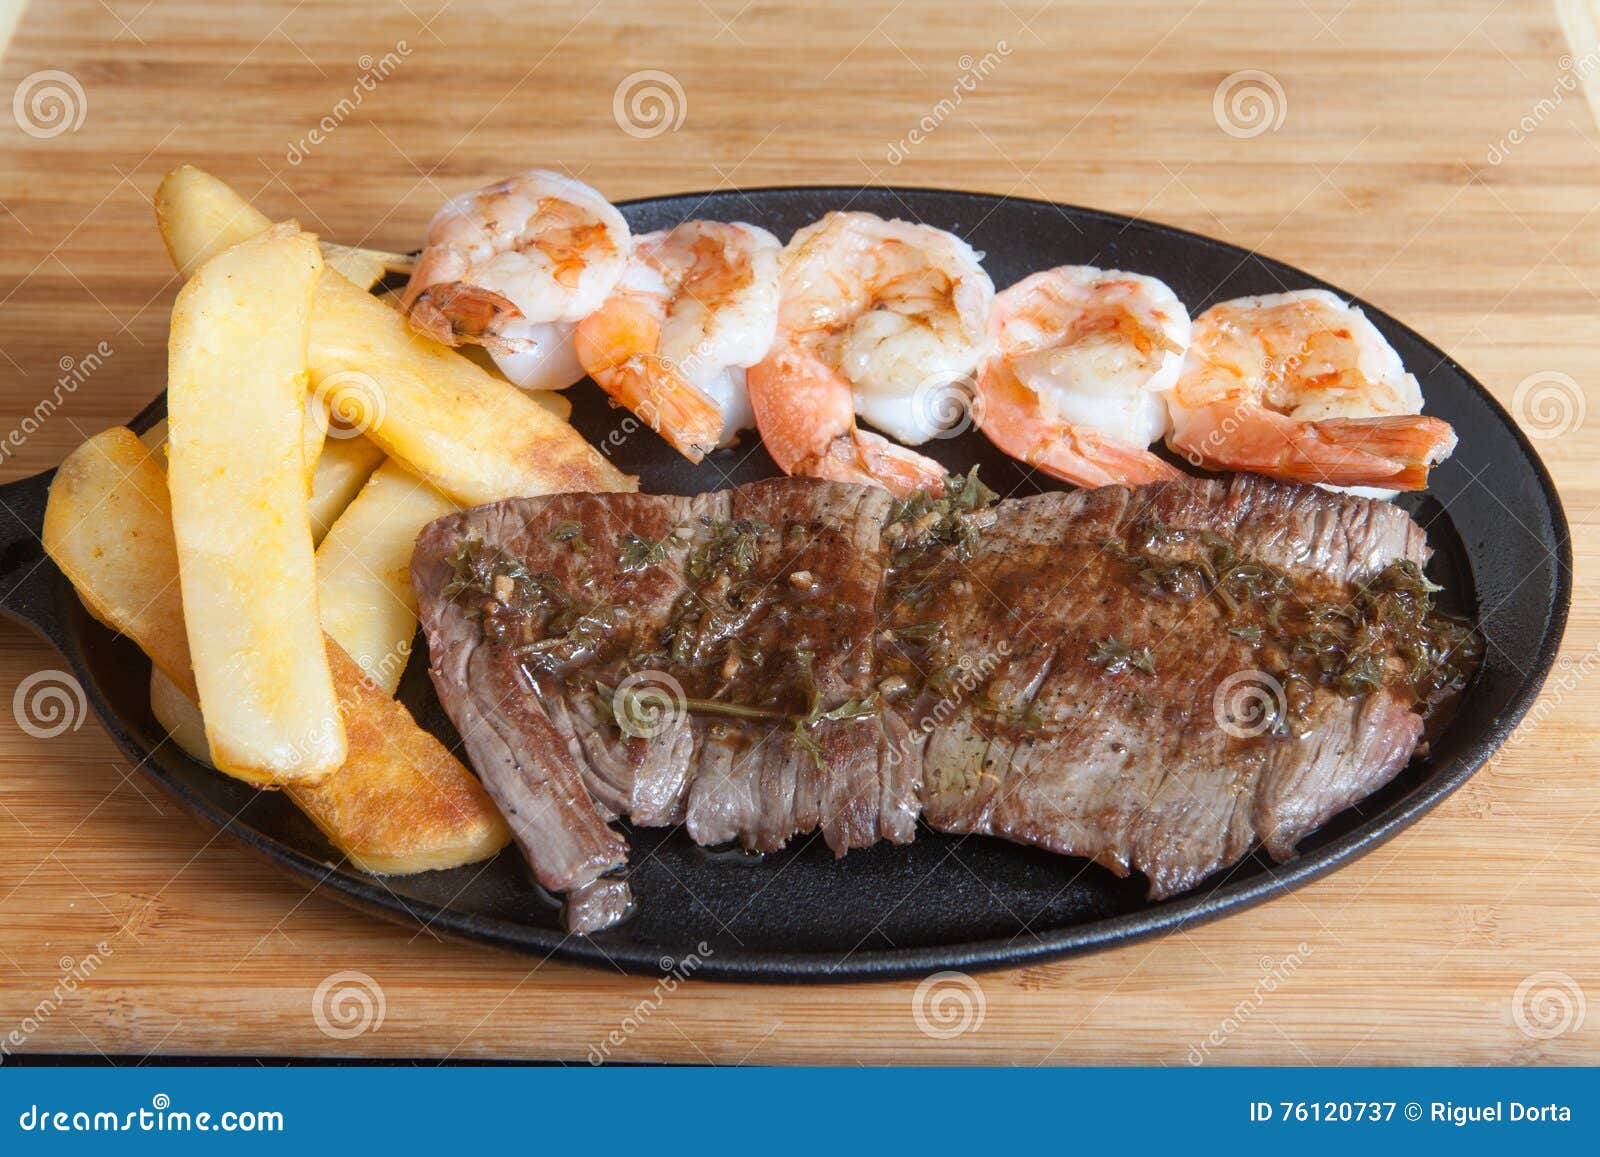 steak shrimps french fries skillet